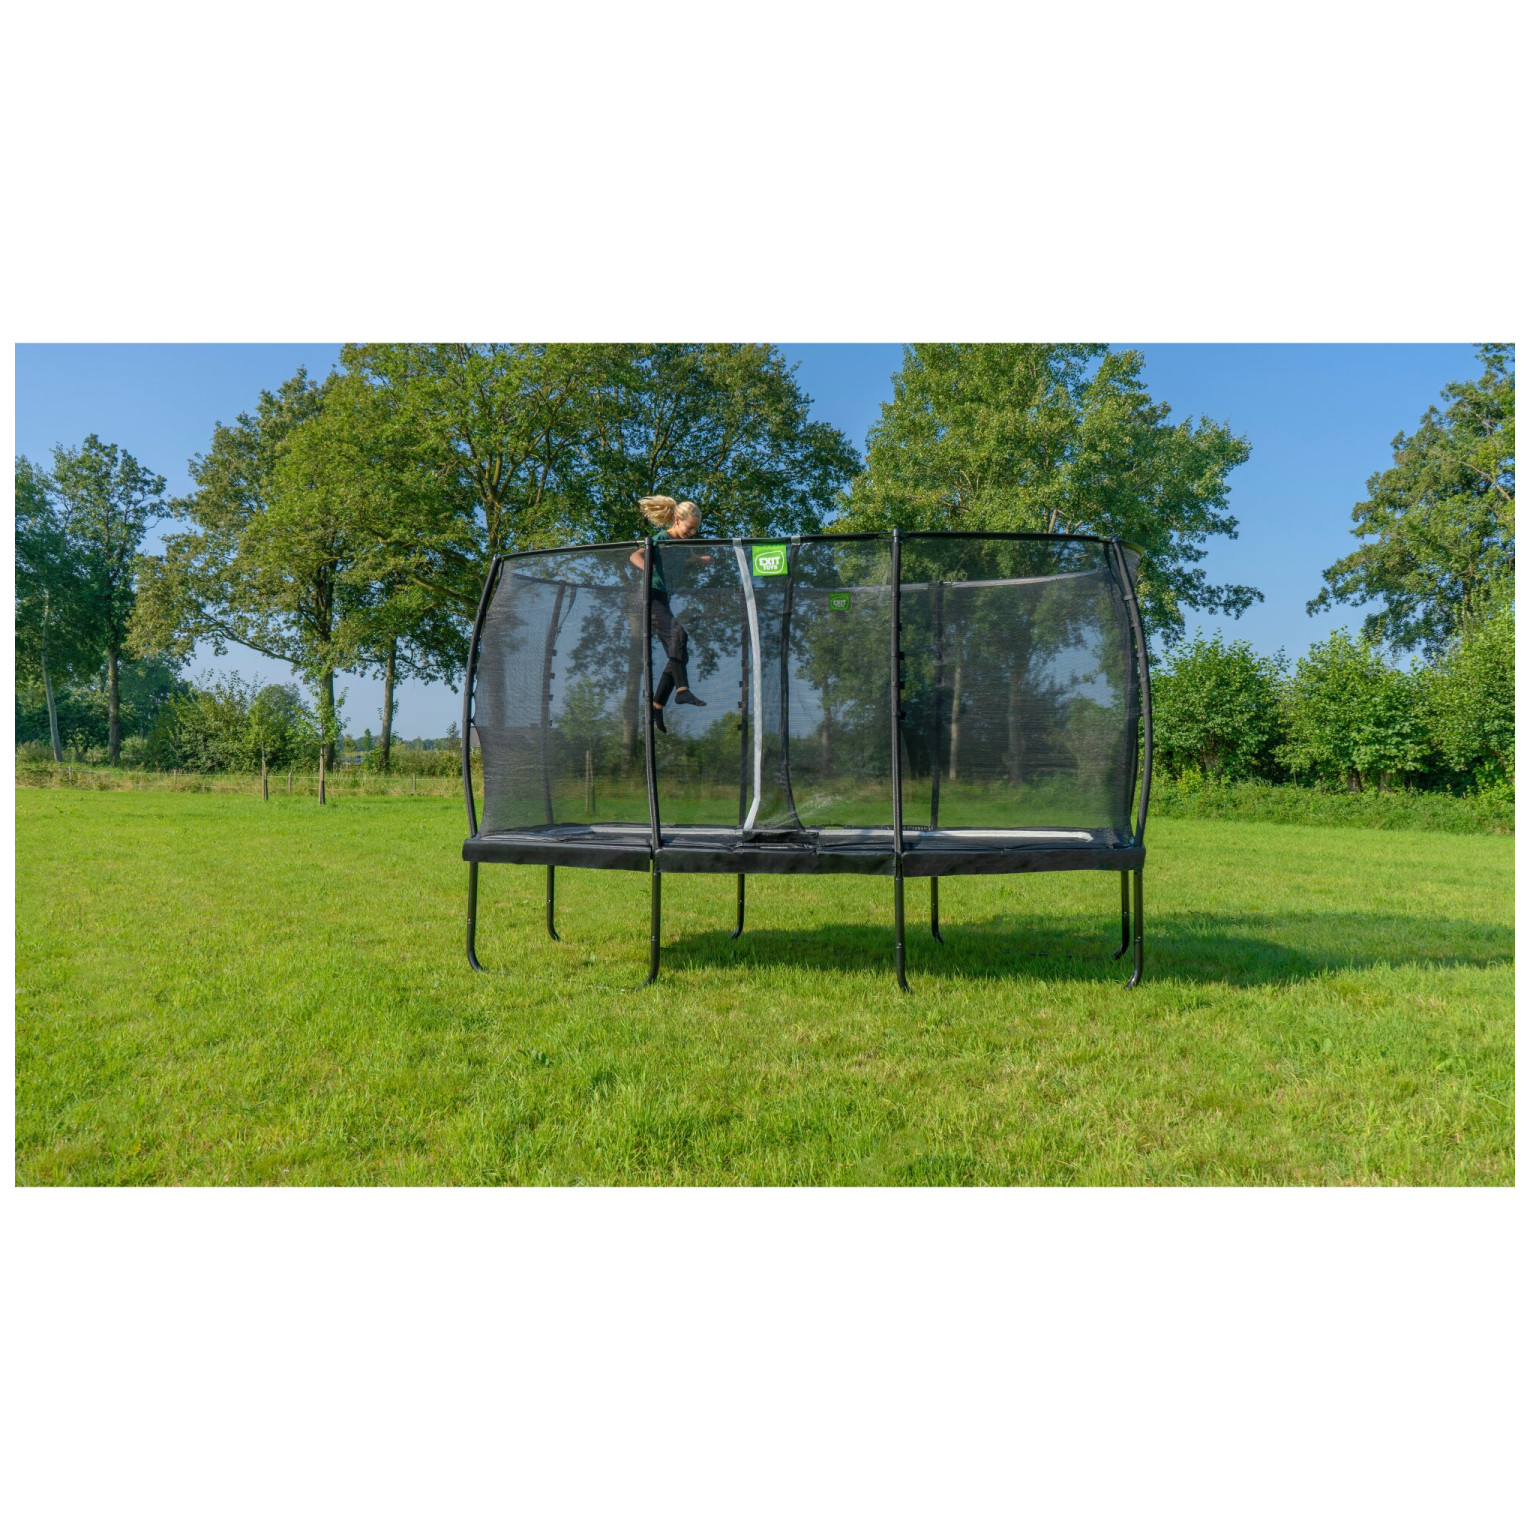 EXIT Allure Premium trampoline 214x366cm - groen